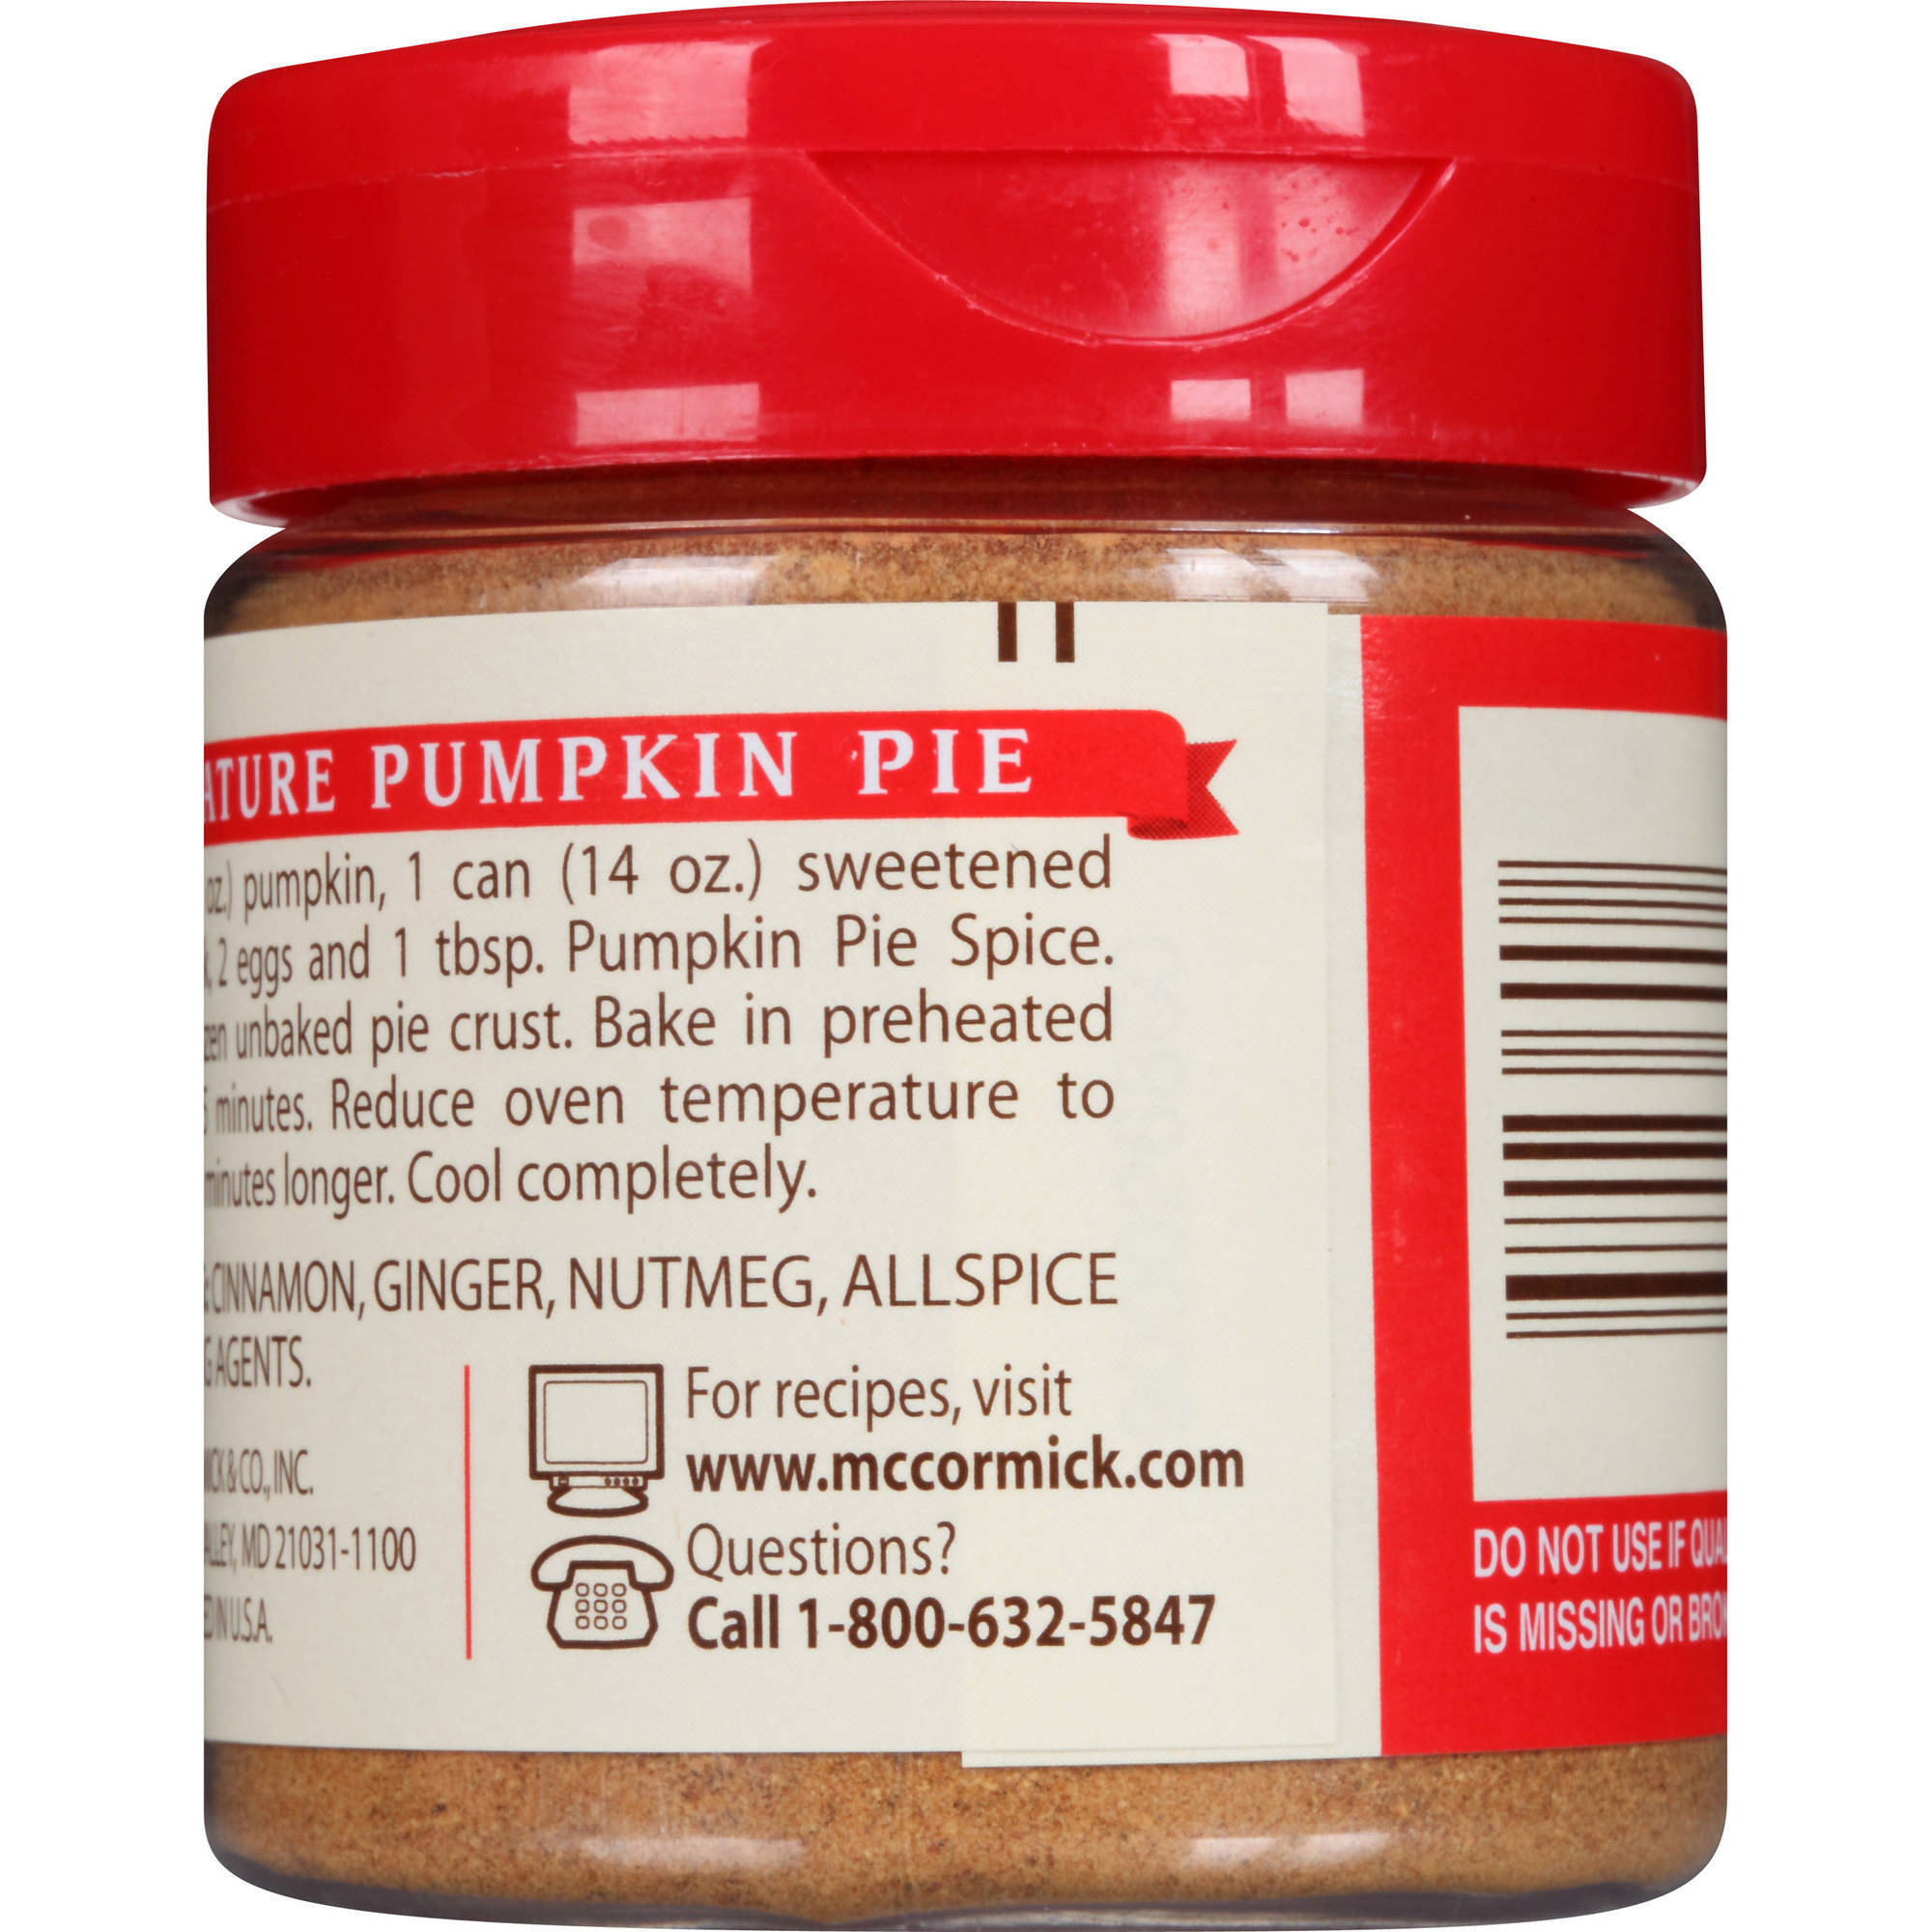 Mccormick Pumpkin Pie Spice
 mccormick pumpkin pie spice recipe